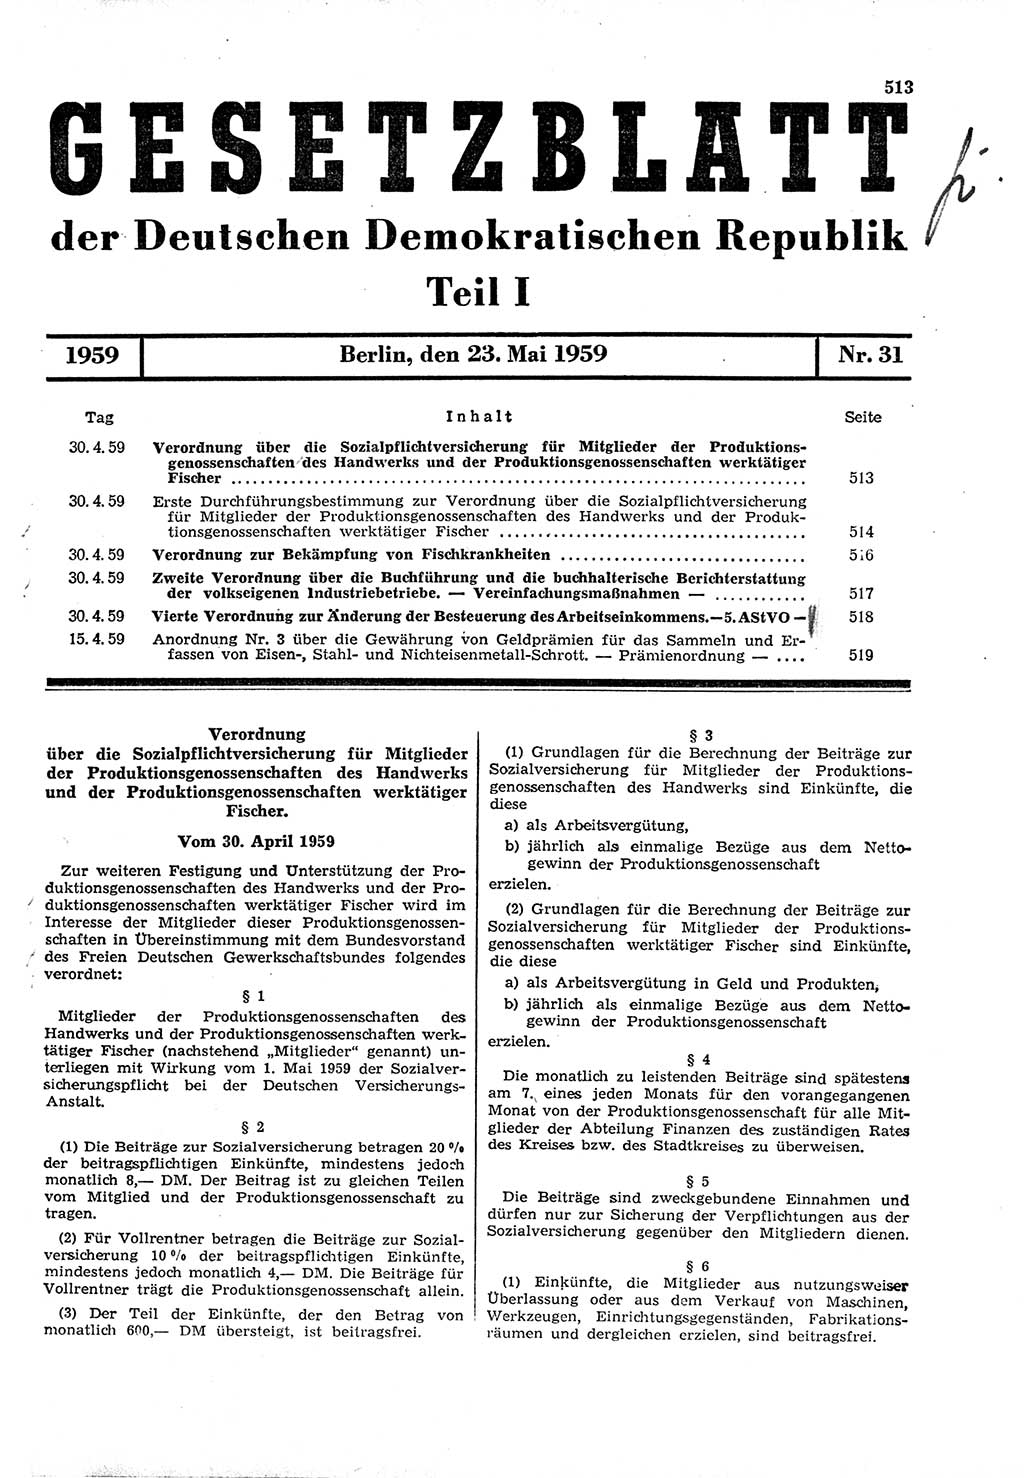 Gesetzblatt (GBl.) der Deutschen Demokratischen Republik (DDR) Teil Ⅰ 1959, Seite 513 (GBl. DDR Ⅰ 1959, S. 513)